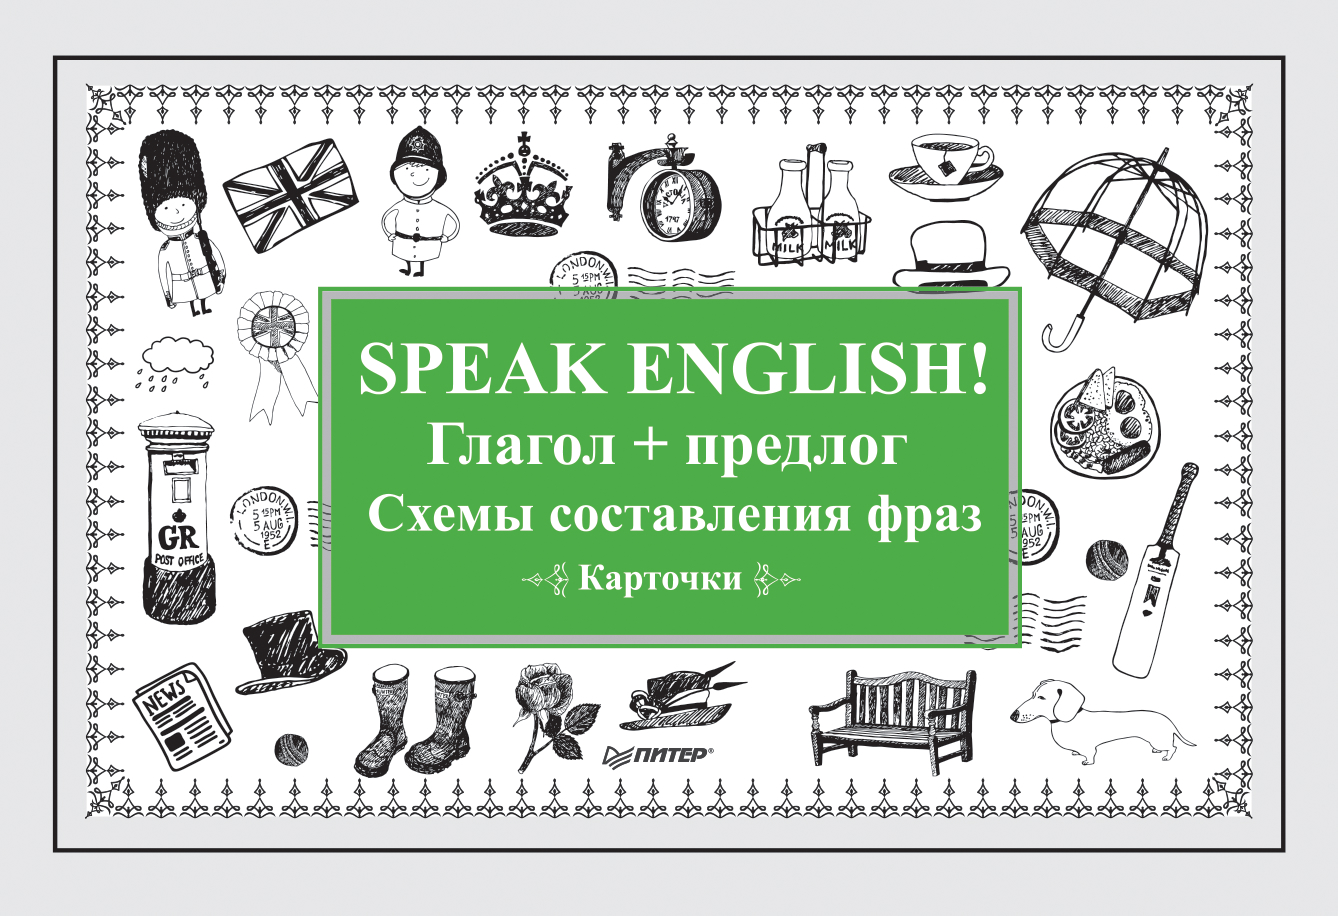 Speak English!Глагол + предлог. Схемы составления фраз